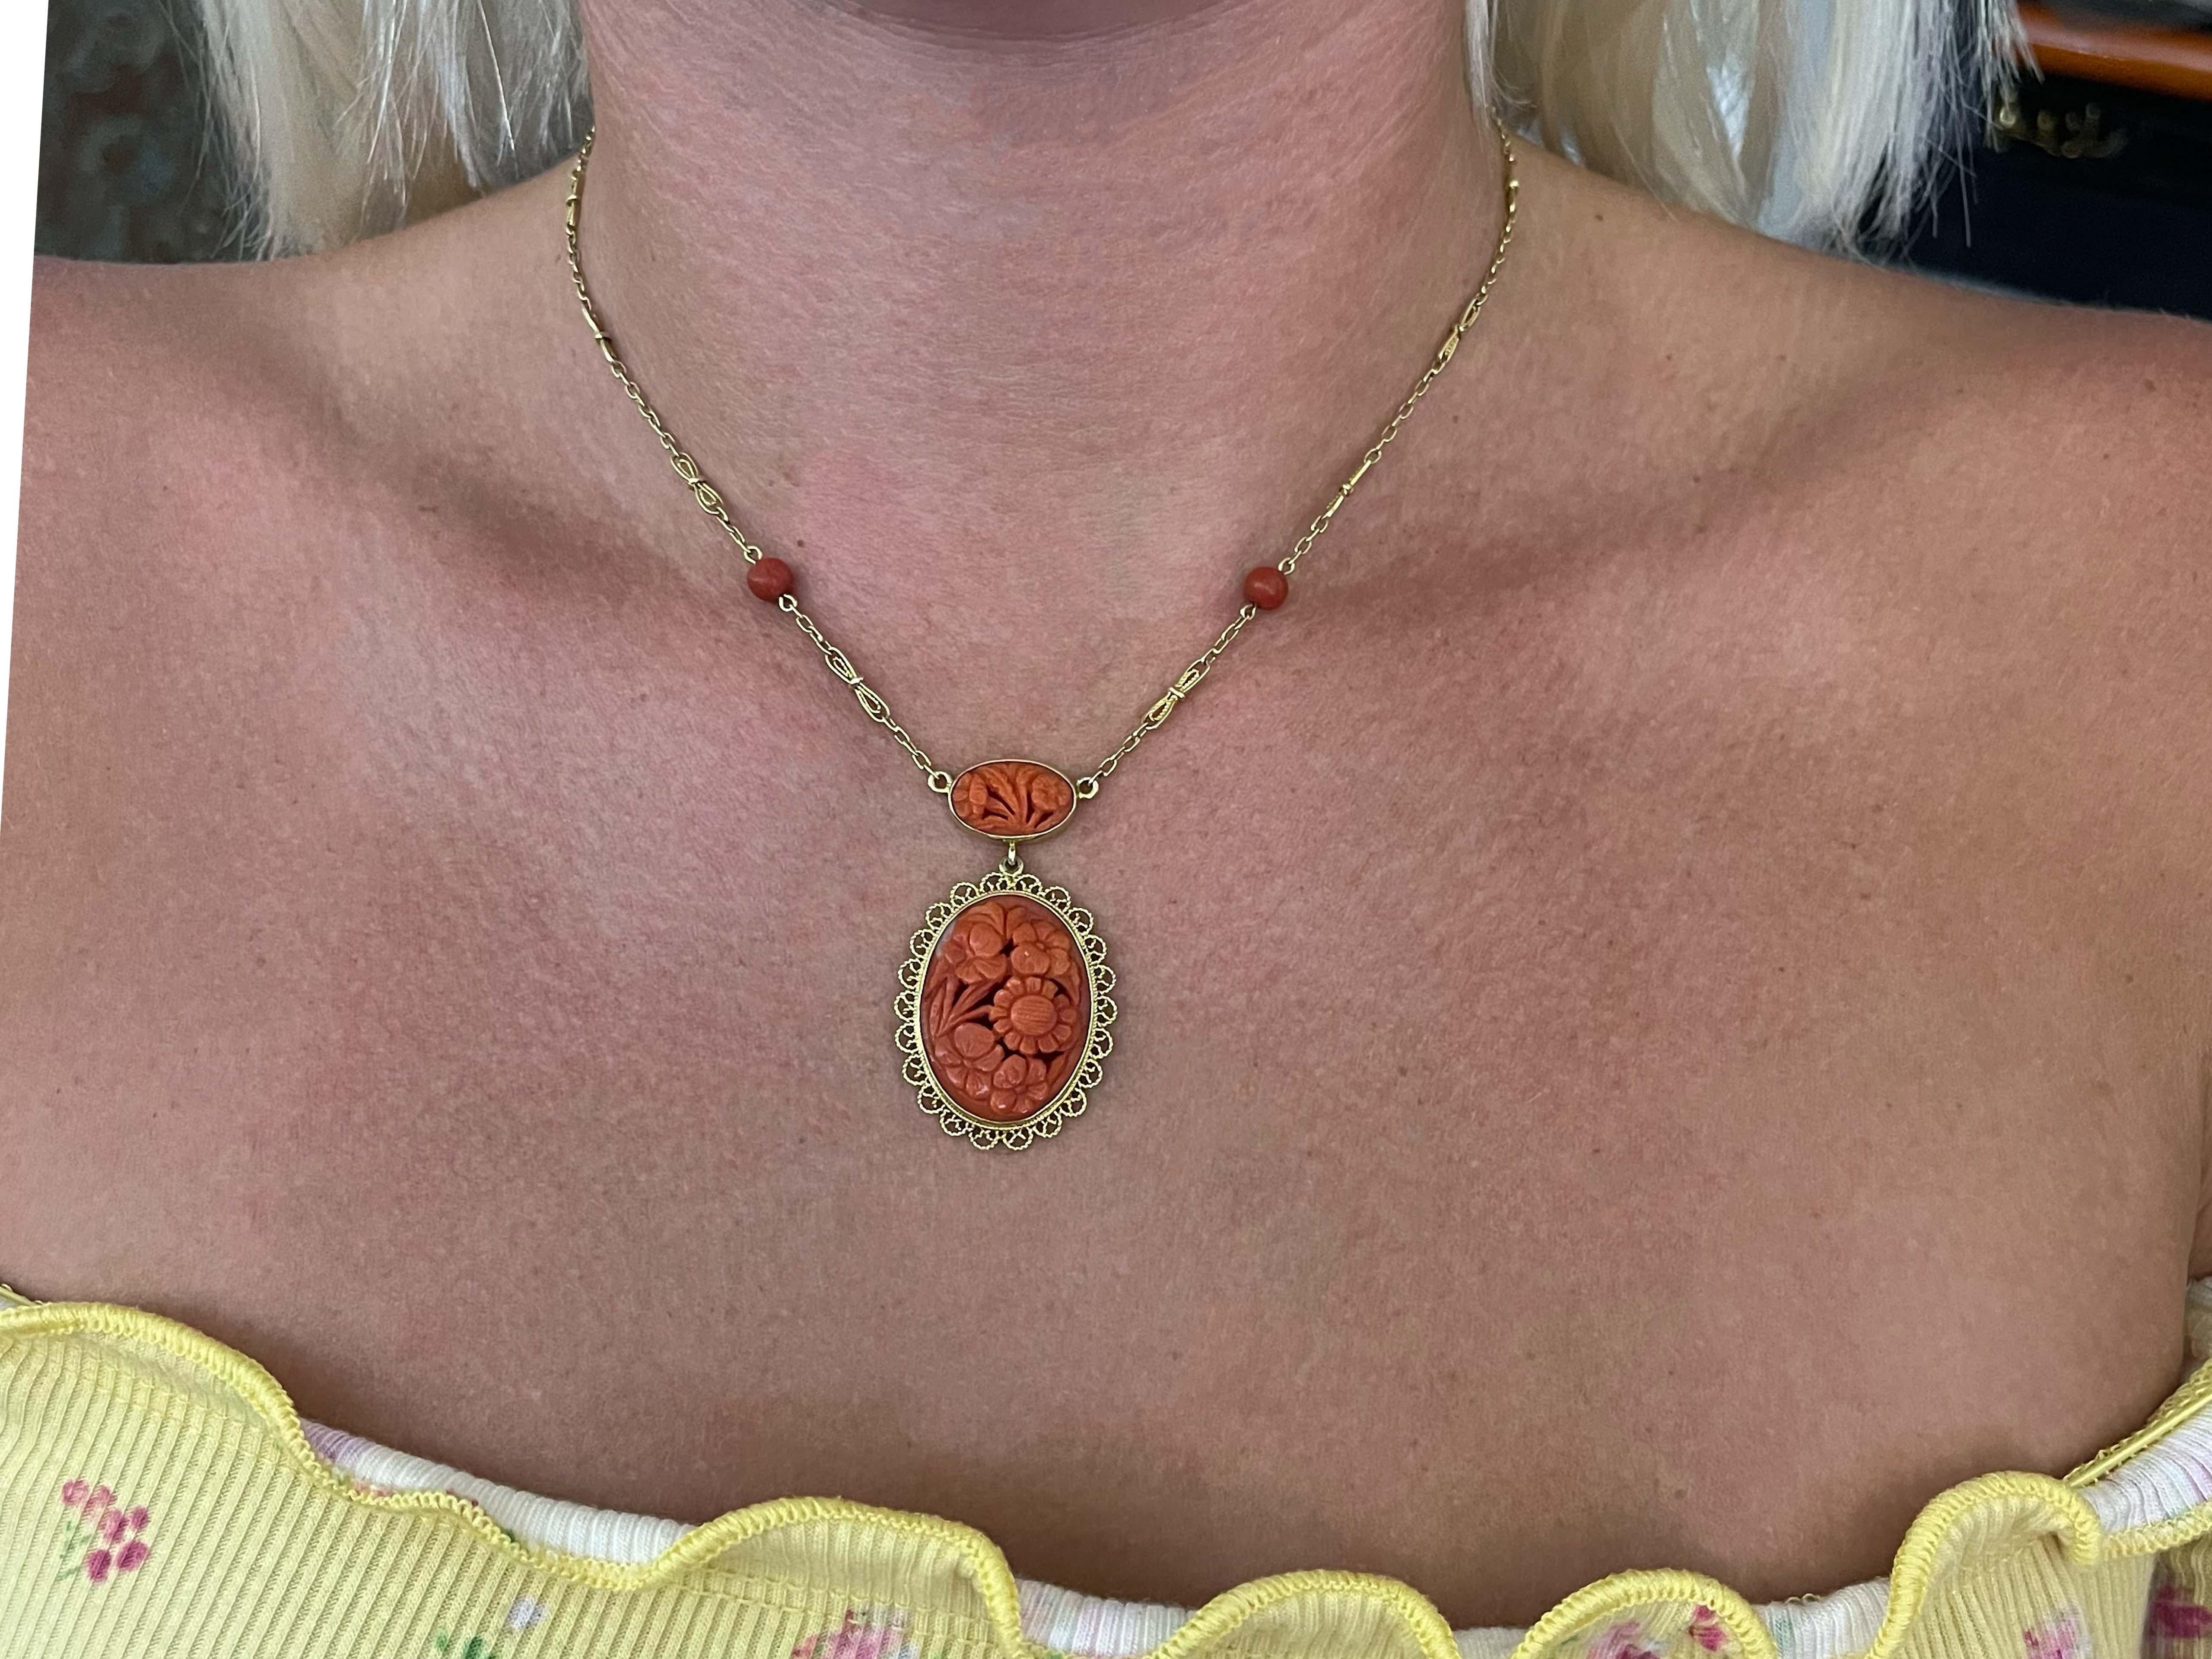 Diese wunderschöne, geschnitzte Halskette aus roter Mittelmeerkoralle stammt aus den 1970er Jahren. Die durchbrochene, geschnitzte rote Koralle zeigt Blumen. Der Anhänger ist ca. 1,75